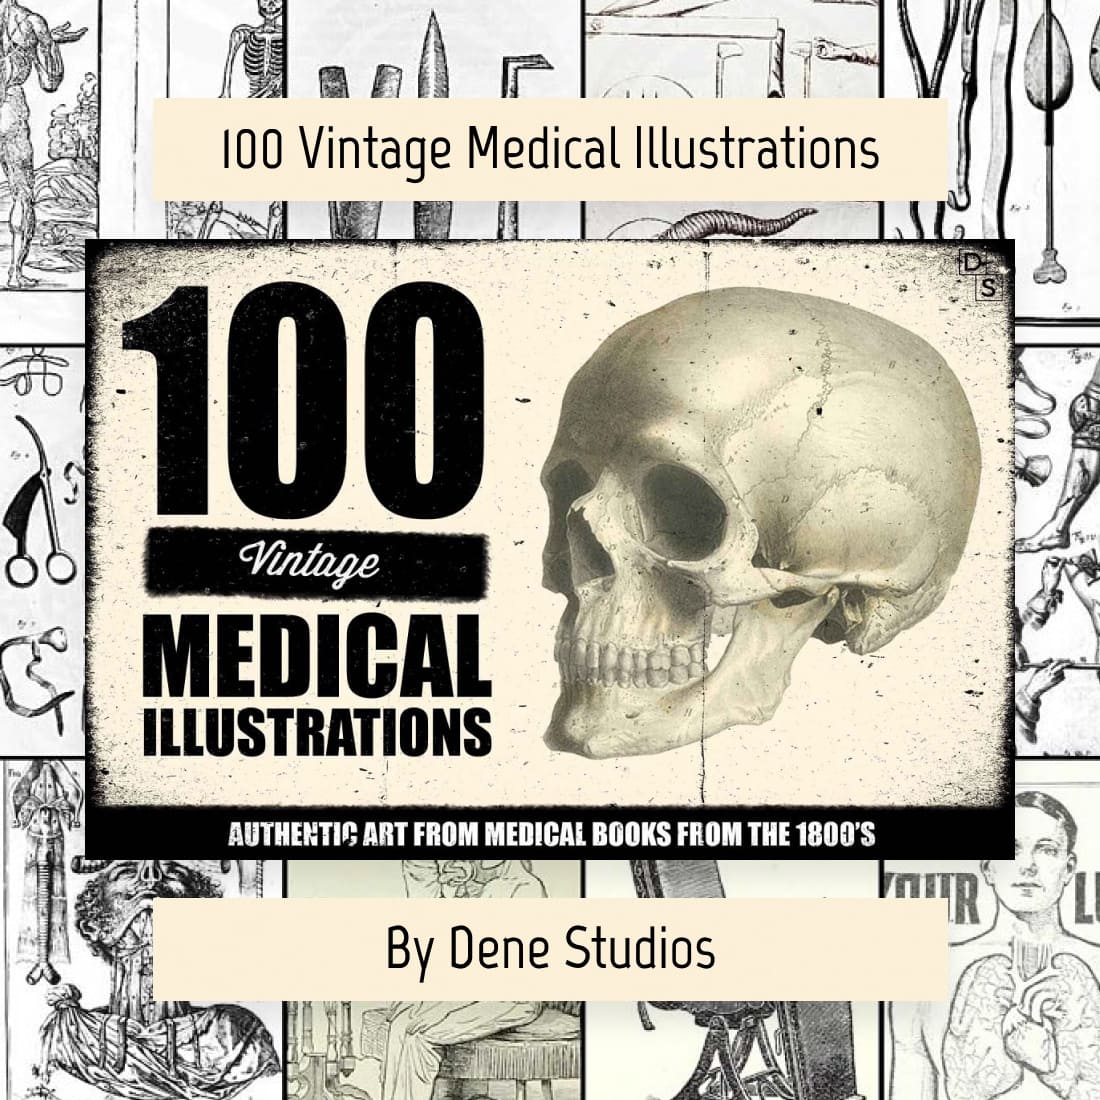 100 vintage medical illustrations cover image.